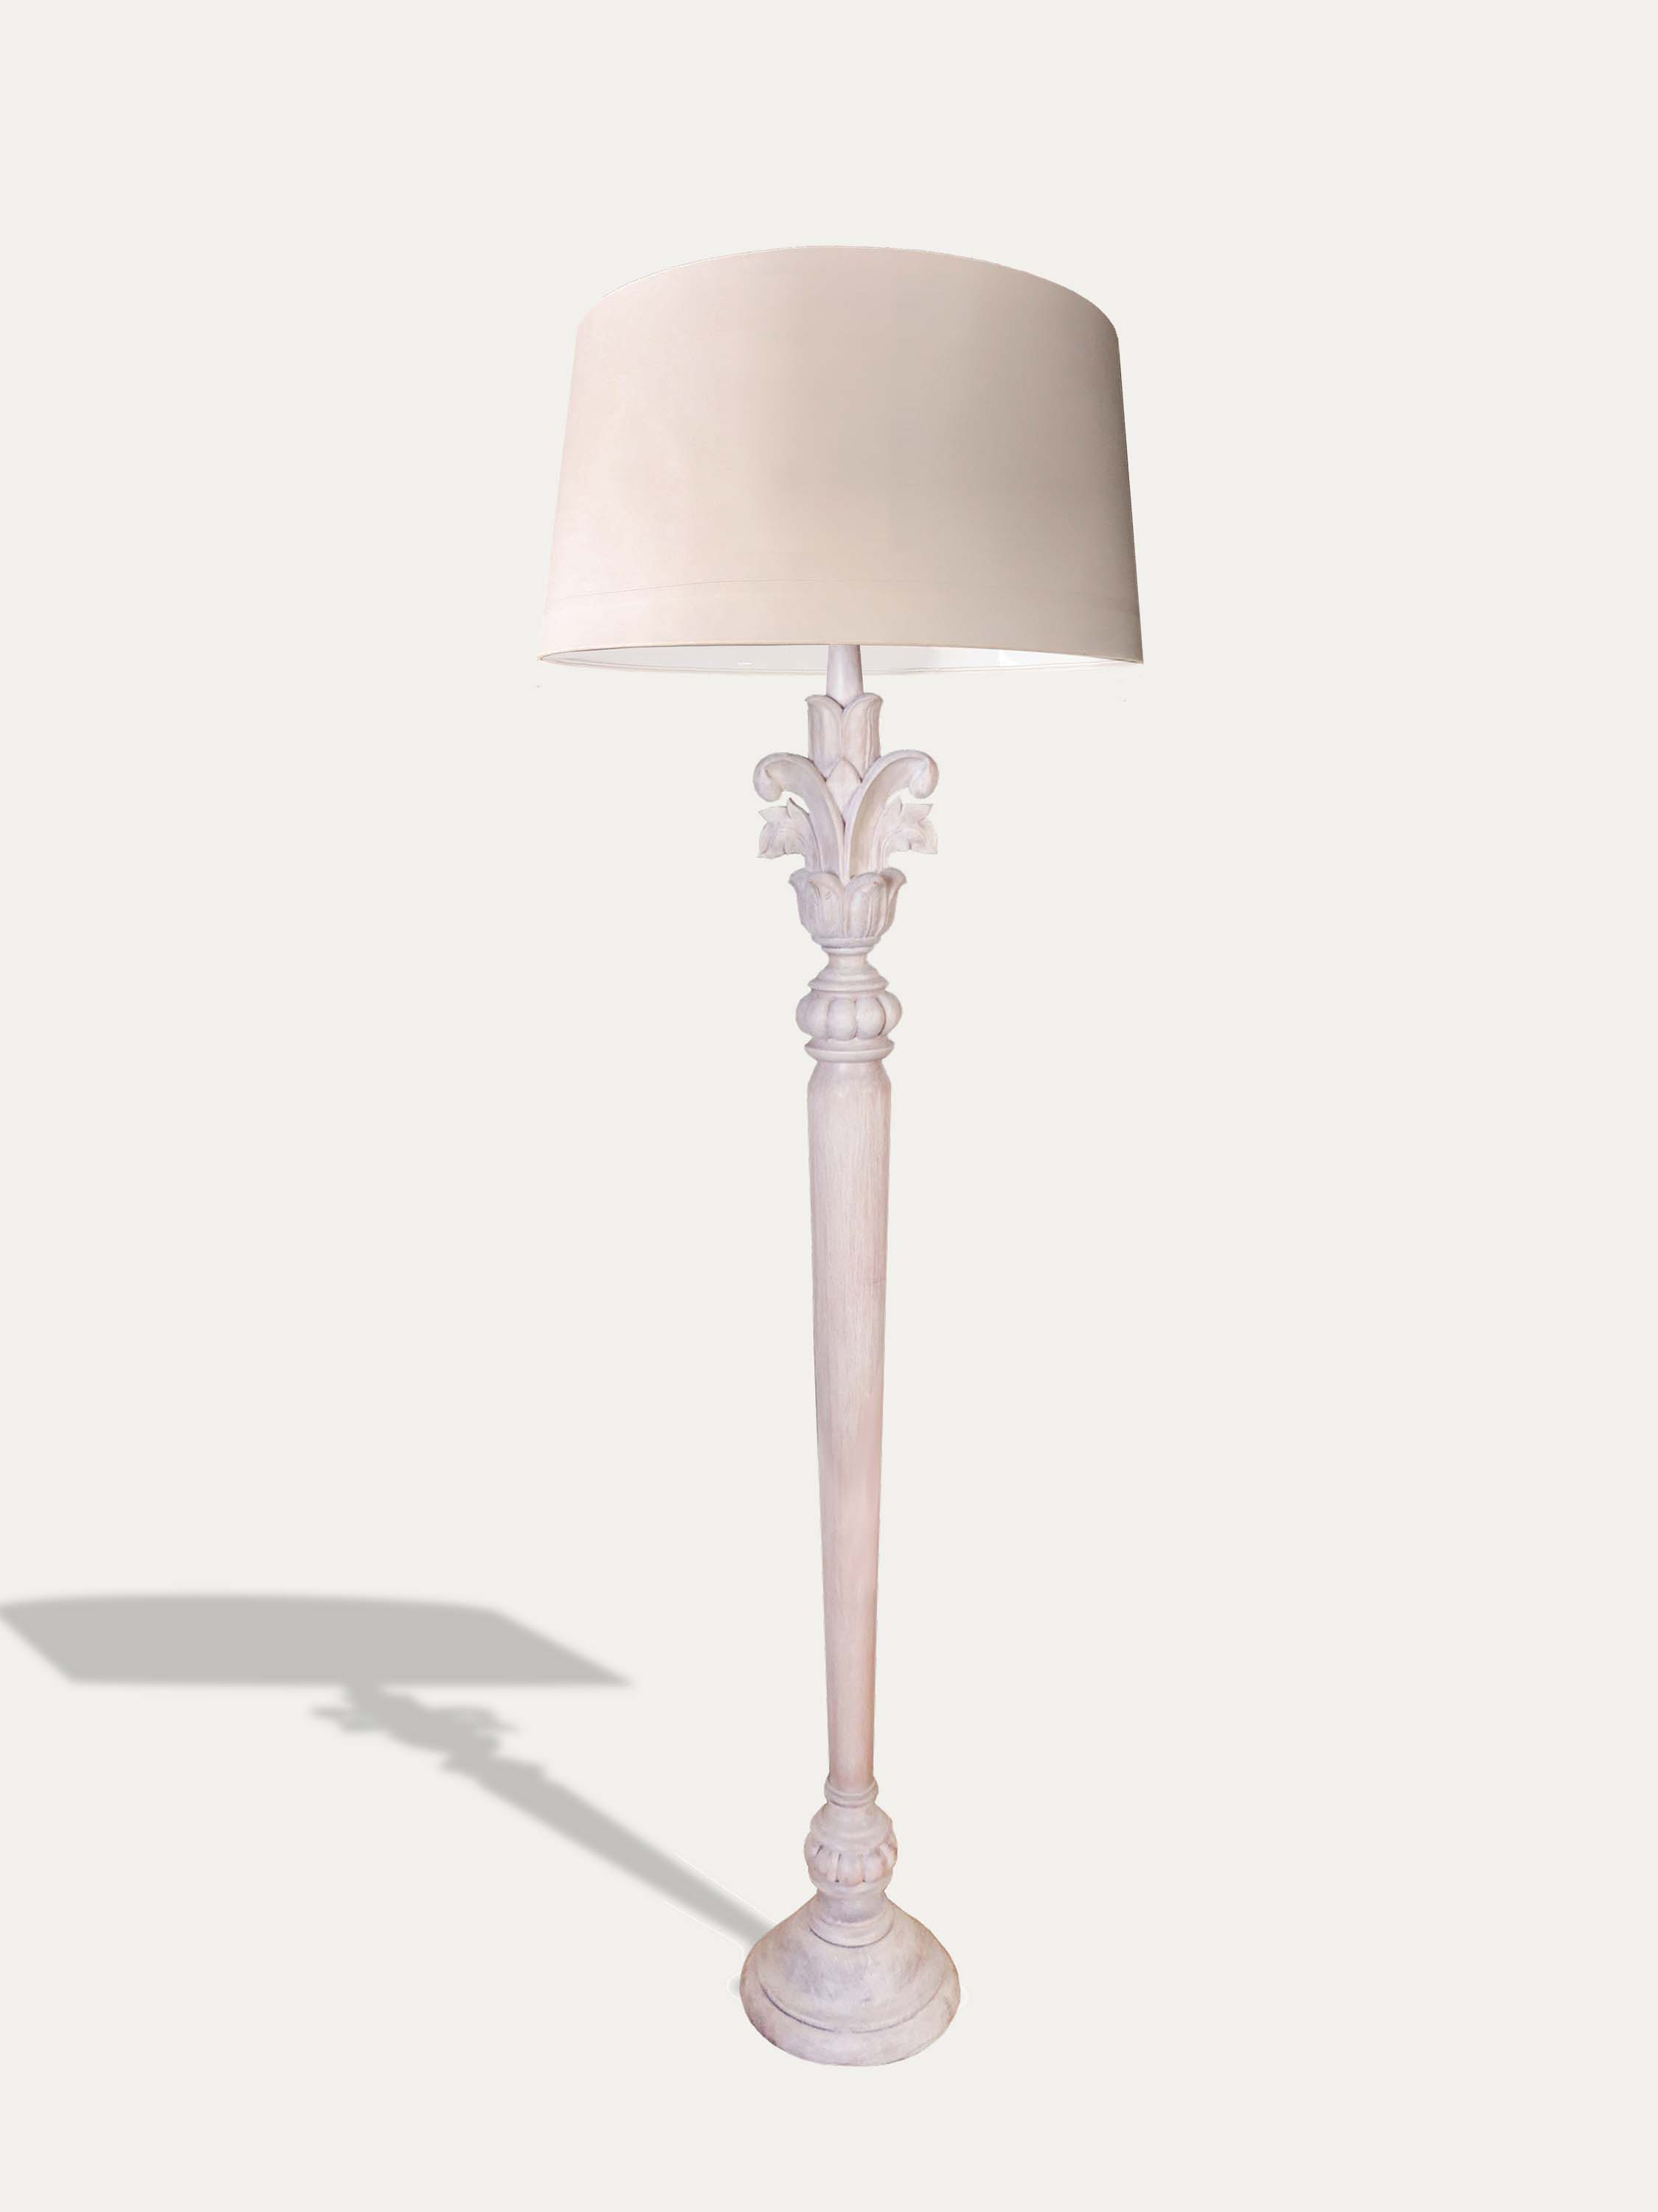 Botanica - Handmade Floor Lamp from Kirschon